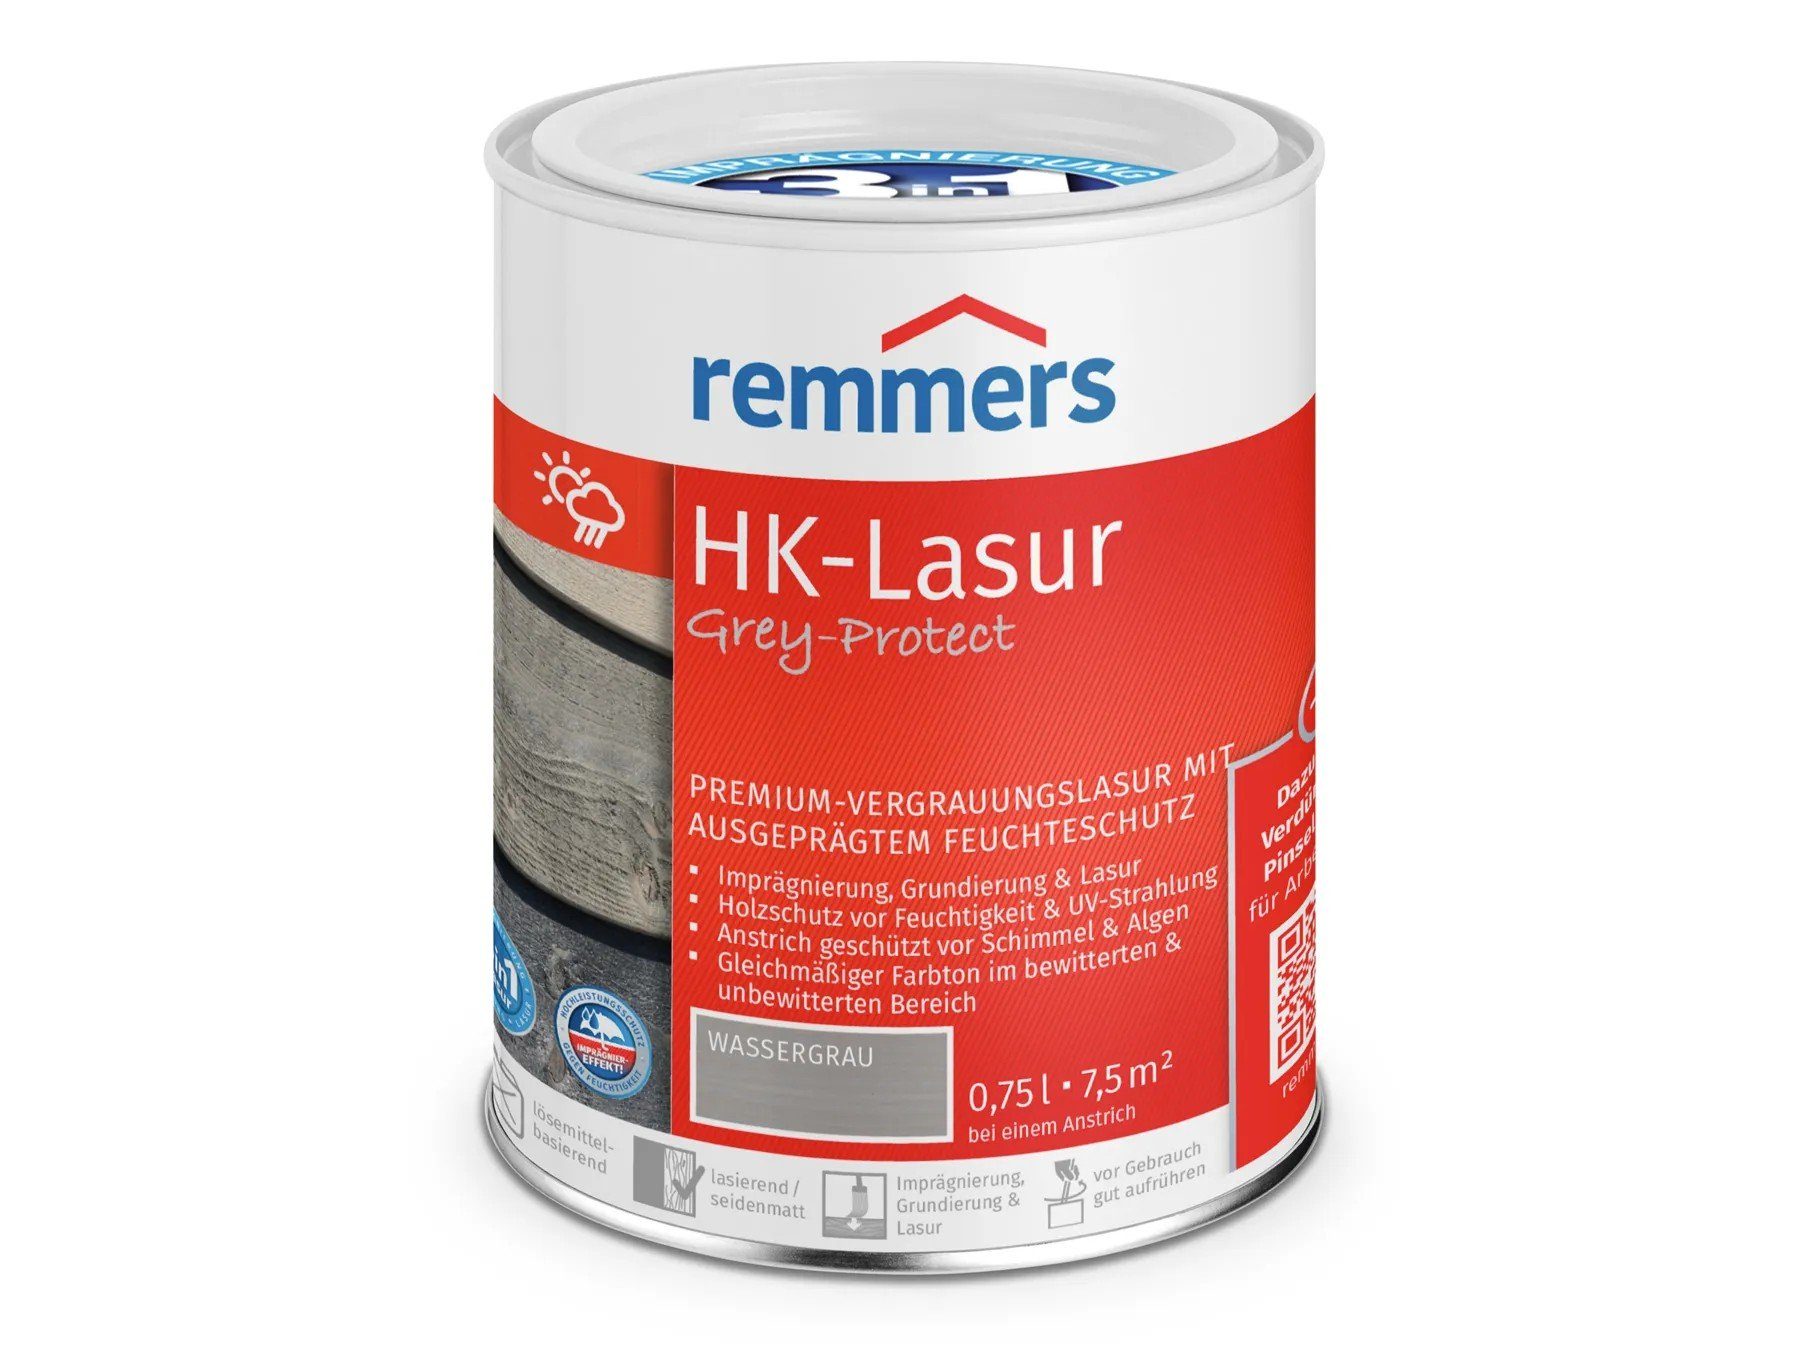 Remmers Holzschutzlasur HK-Lasur 3in1 Grey-Protect wassergrau (FT-20924)